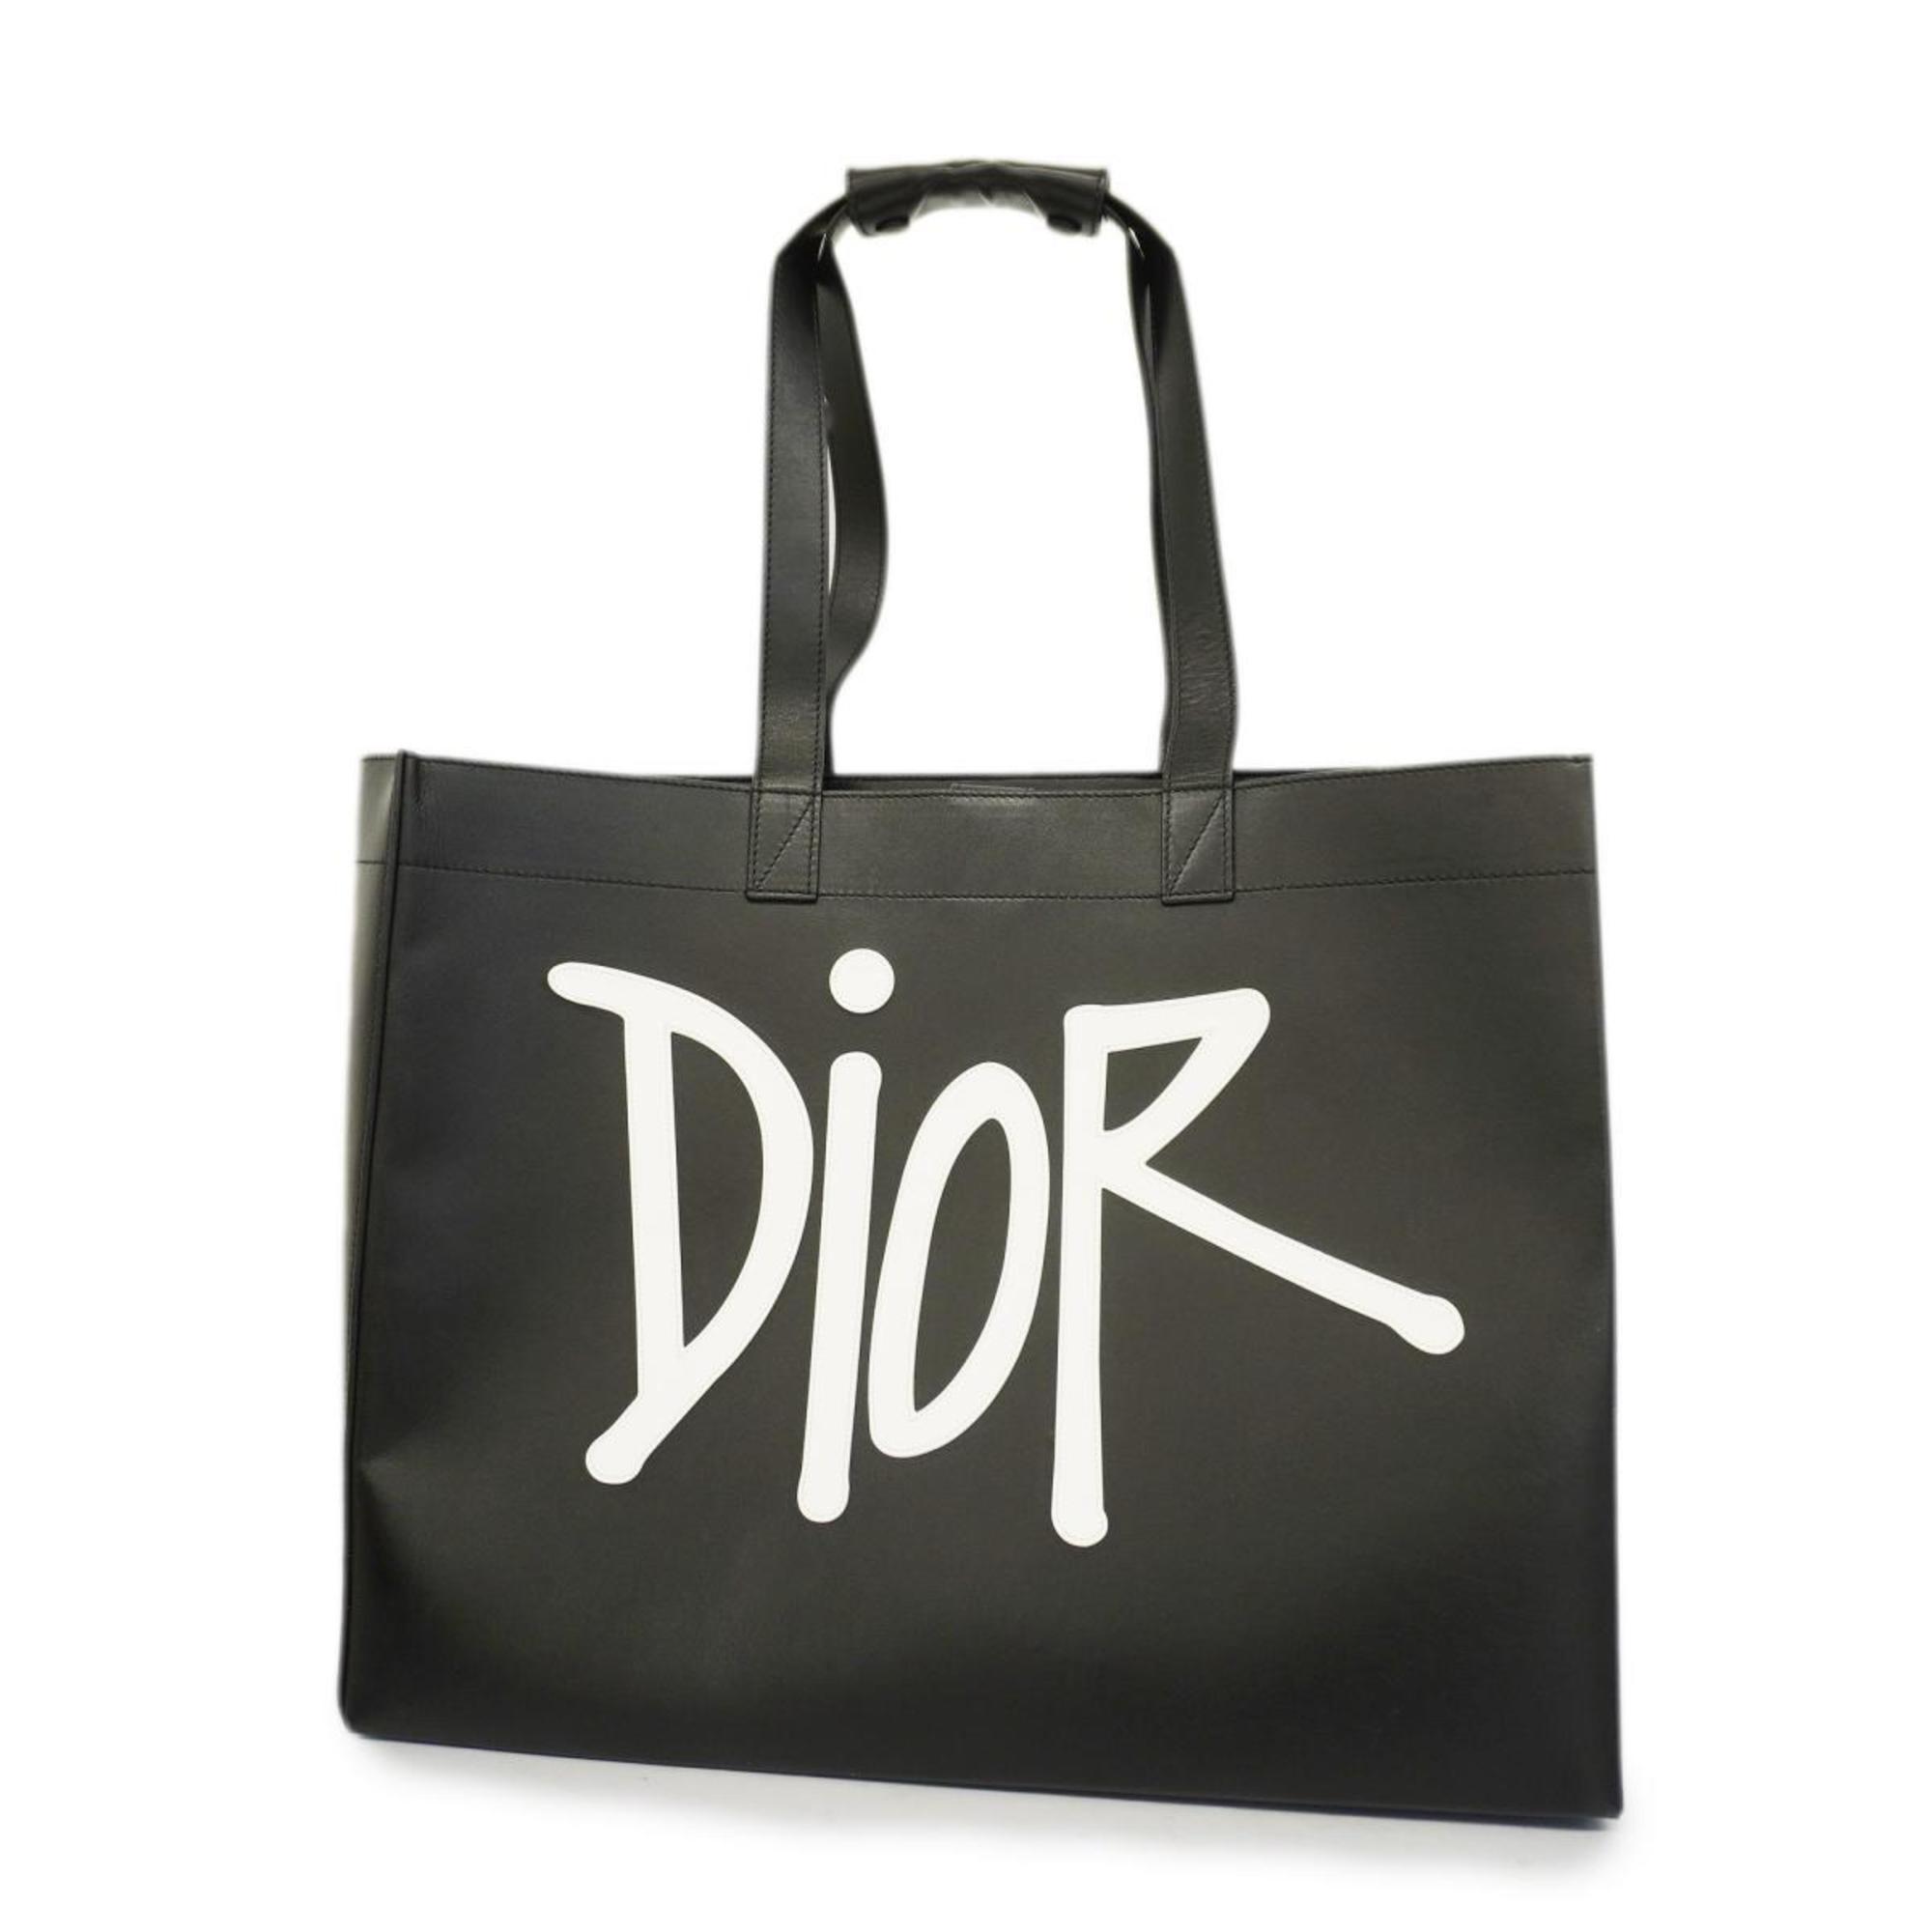 クリスチャン・ディオール(Christian Dior) クリスチャンディオール ...